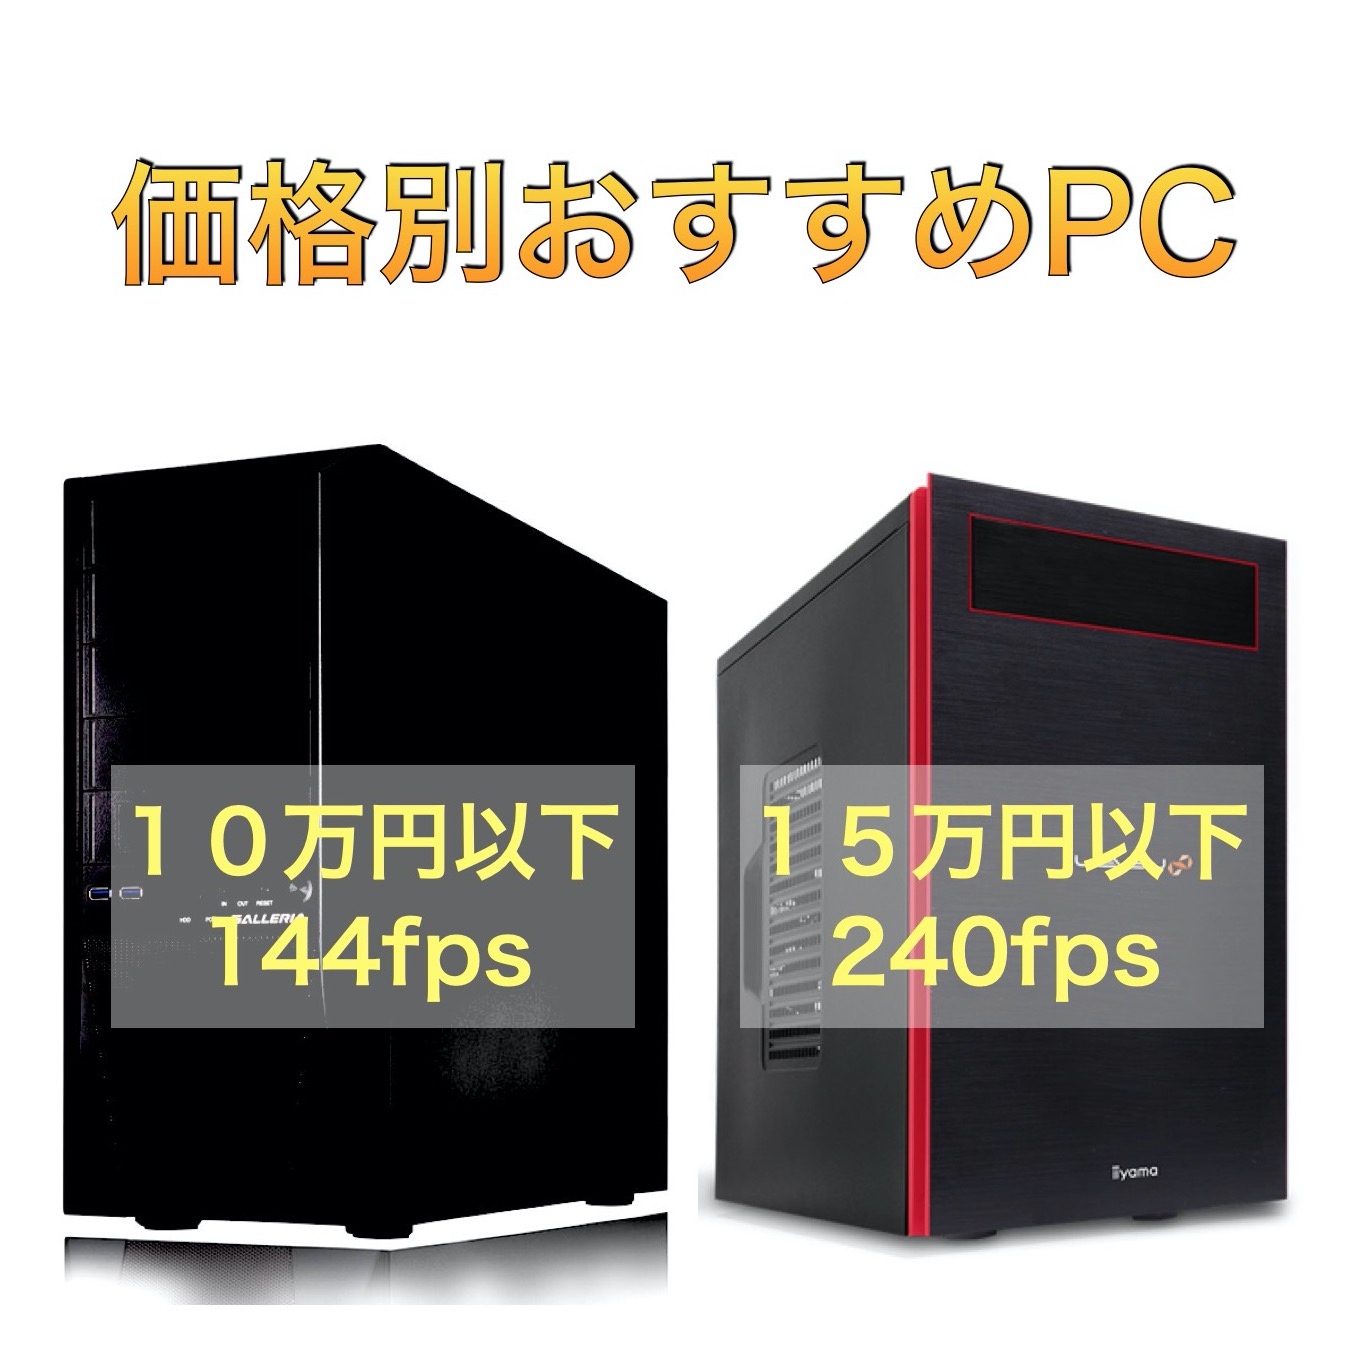 価格別PC（10万,15万,20万)